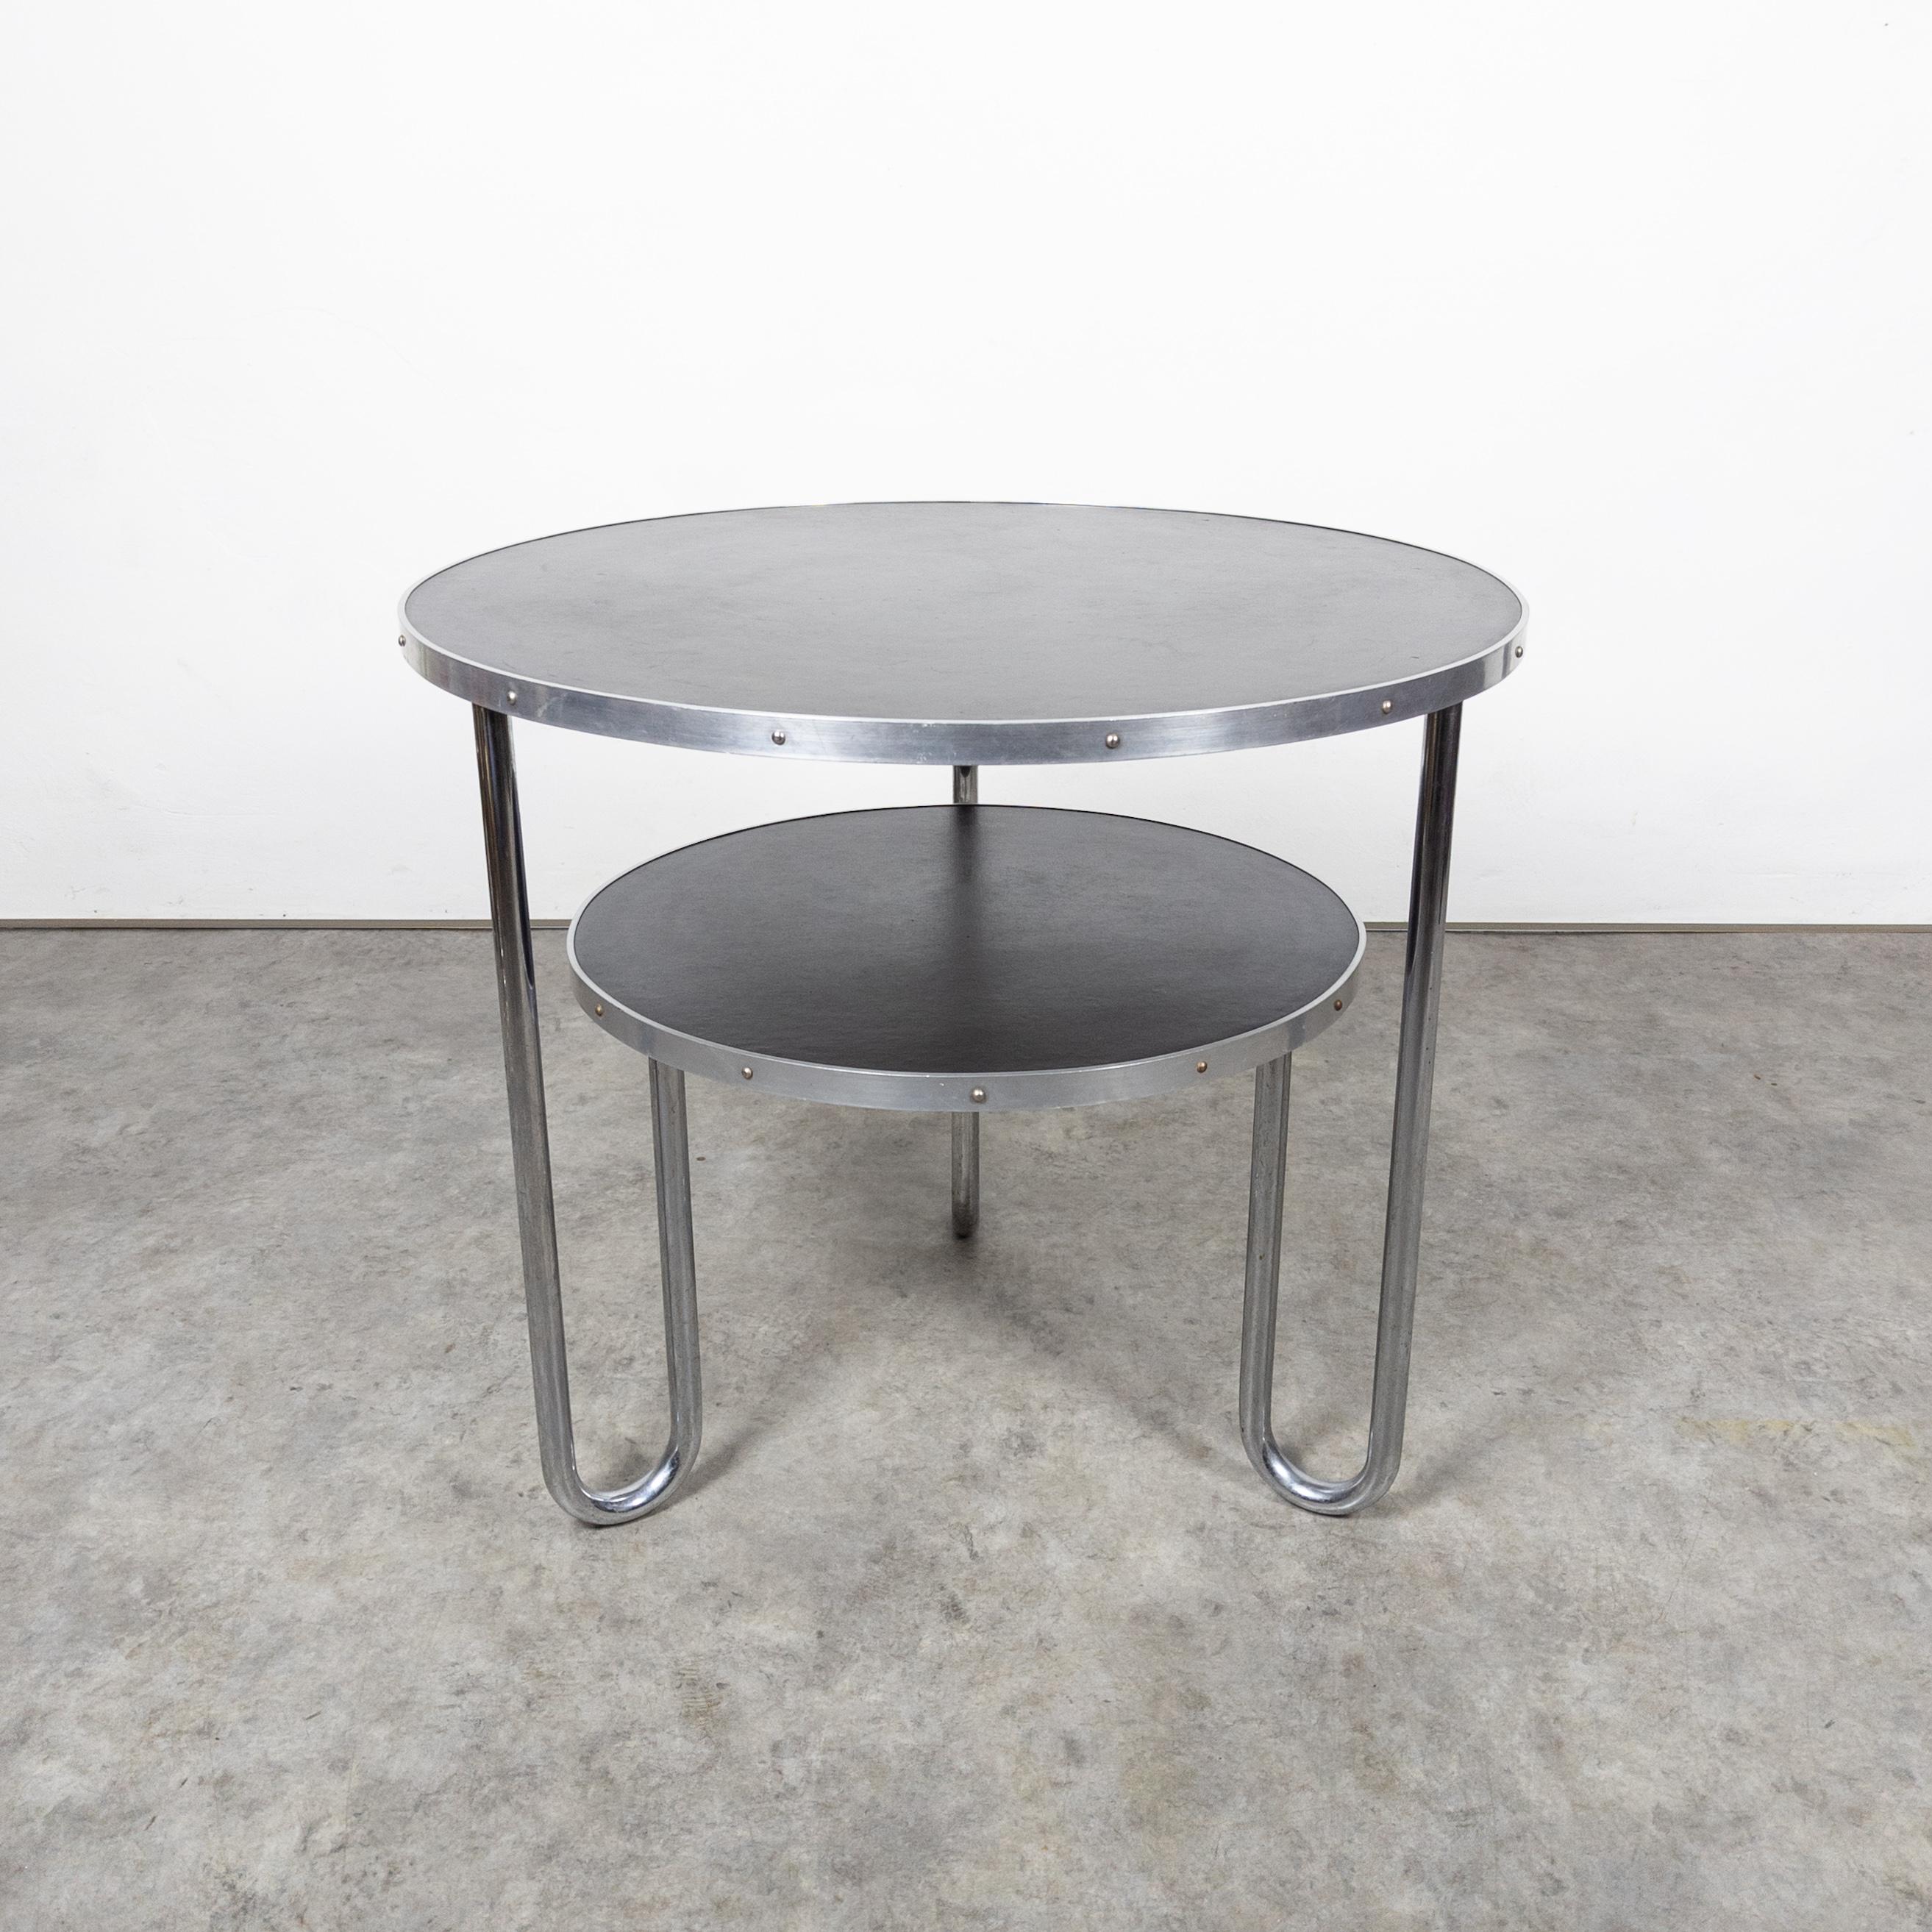 La table en acier tubulaire Bauhaus de Mauser Werke capture l'essence des principes emblématiques du design Bauhaus. Marquée par des lignes épurées et une esthétique minimaliste, cette table présente une structure en acier tubulaire épurée qui allie